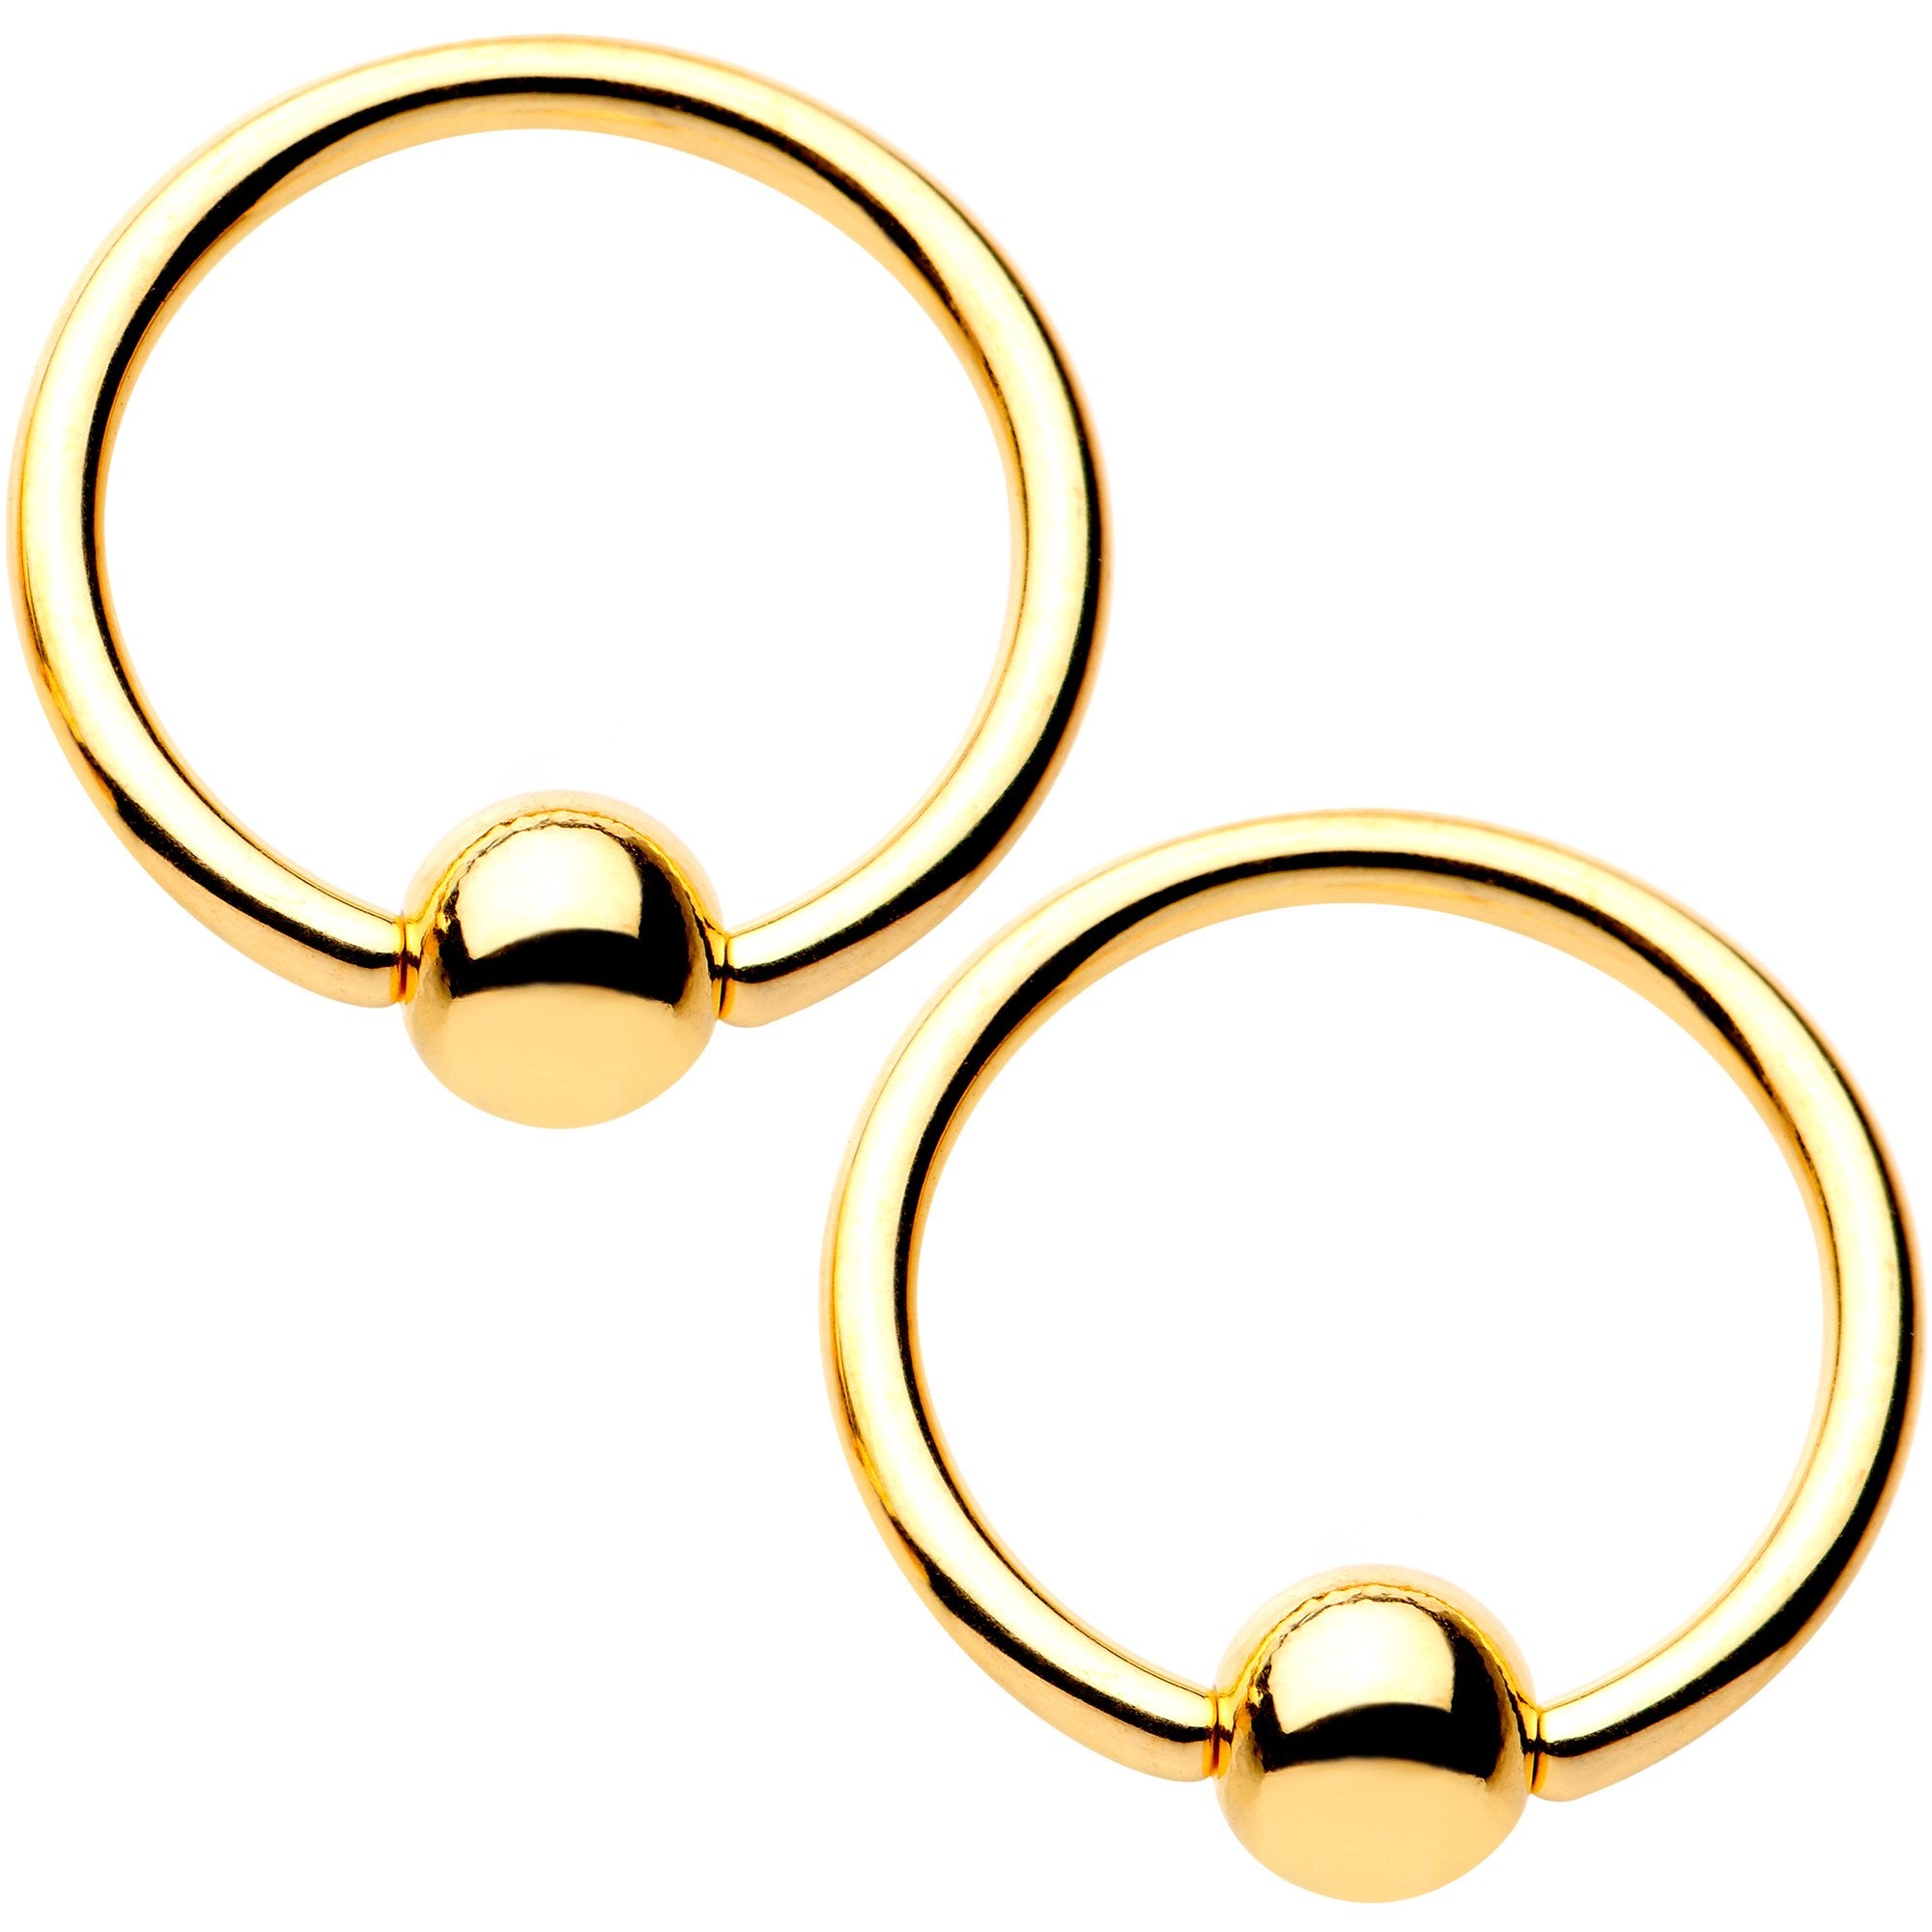 14 Gauge Blue Gem Gold Tone Sccop Captive Ring Barbell Nipple Ring Set